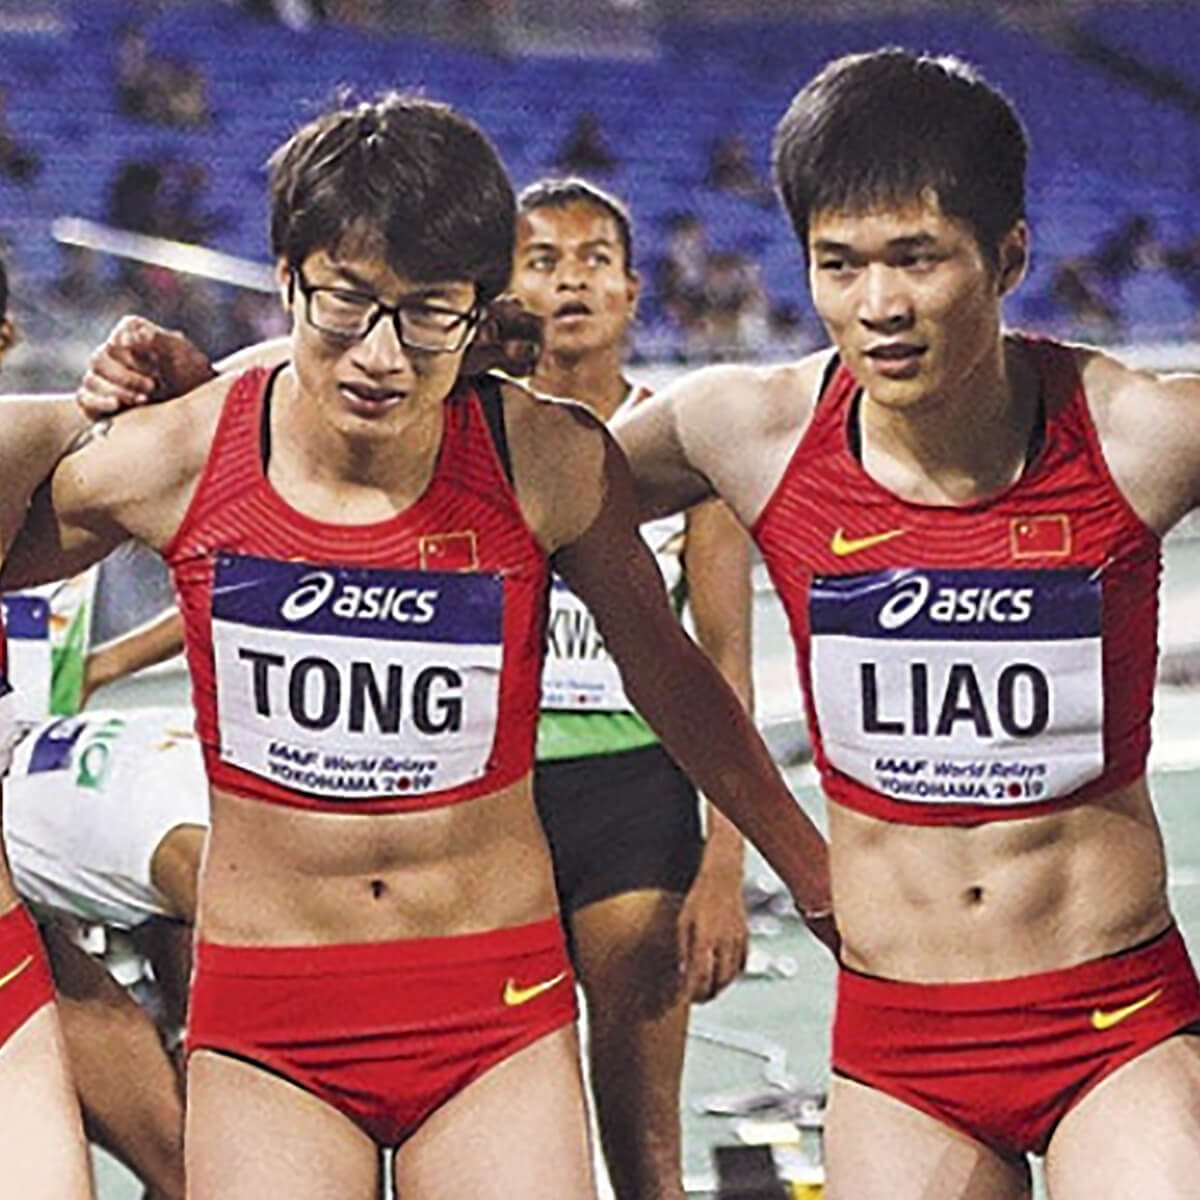 中国インカレ女子陸上競技に男性が参戦 ホルモン投与による副作用説も 日刊サイゾー